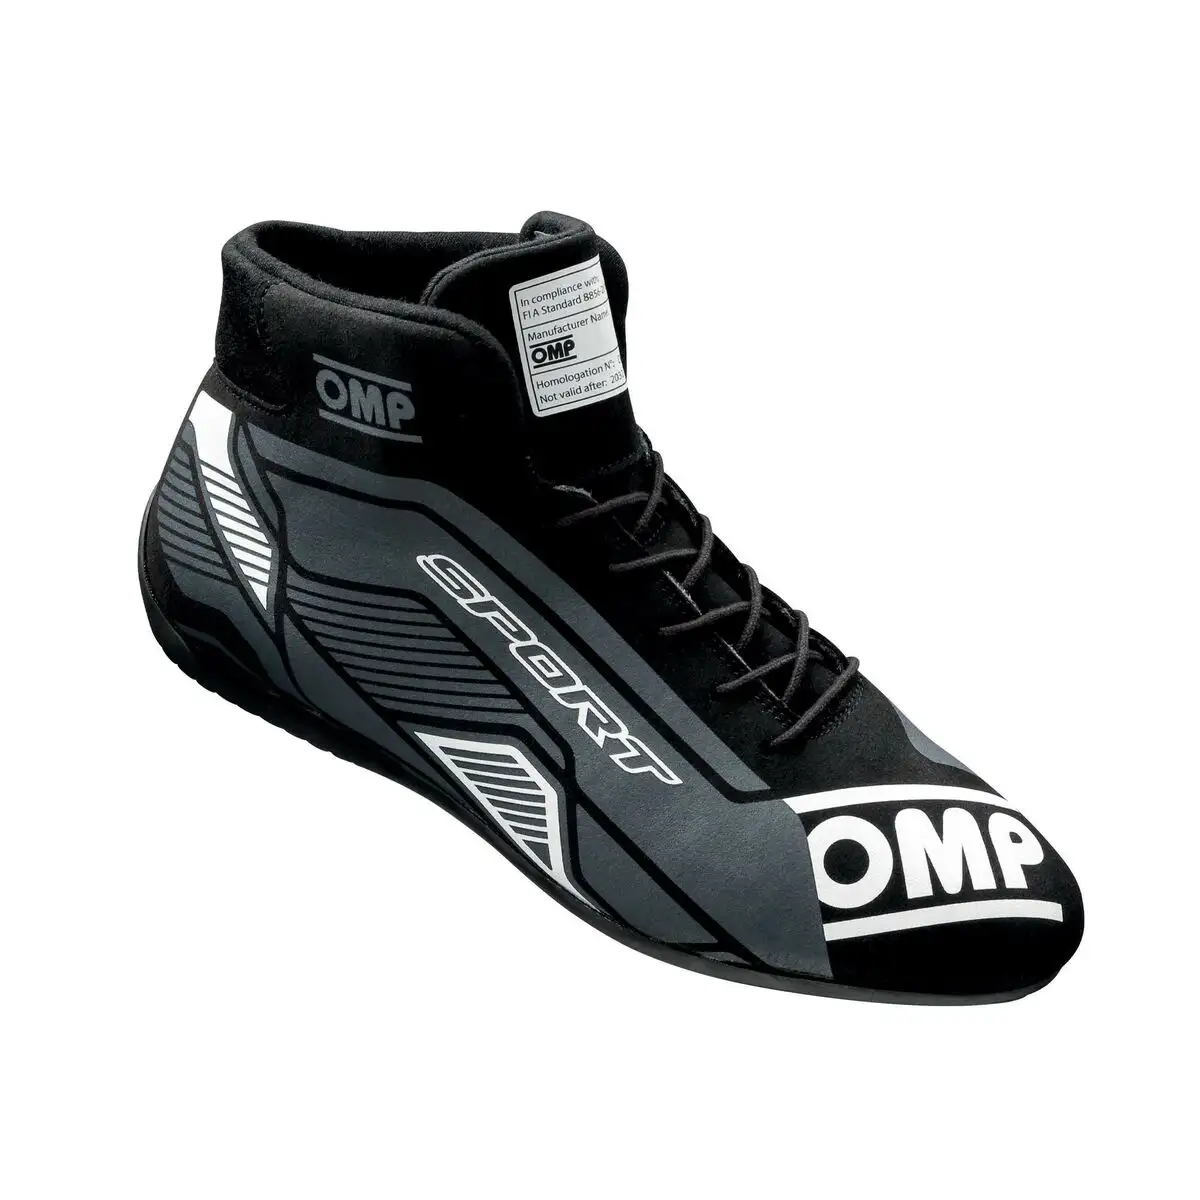 Chaussures de course omp ompic 82907640 noir 40_9761. DIAYTAR SENEGAL - Où Choisir Devient une Découverte. Explorez notre boutique en ligne et trouvez des articles qui vous surprennent et vous ravissent à chaque clic.